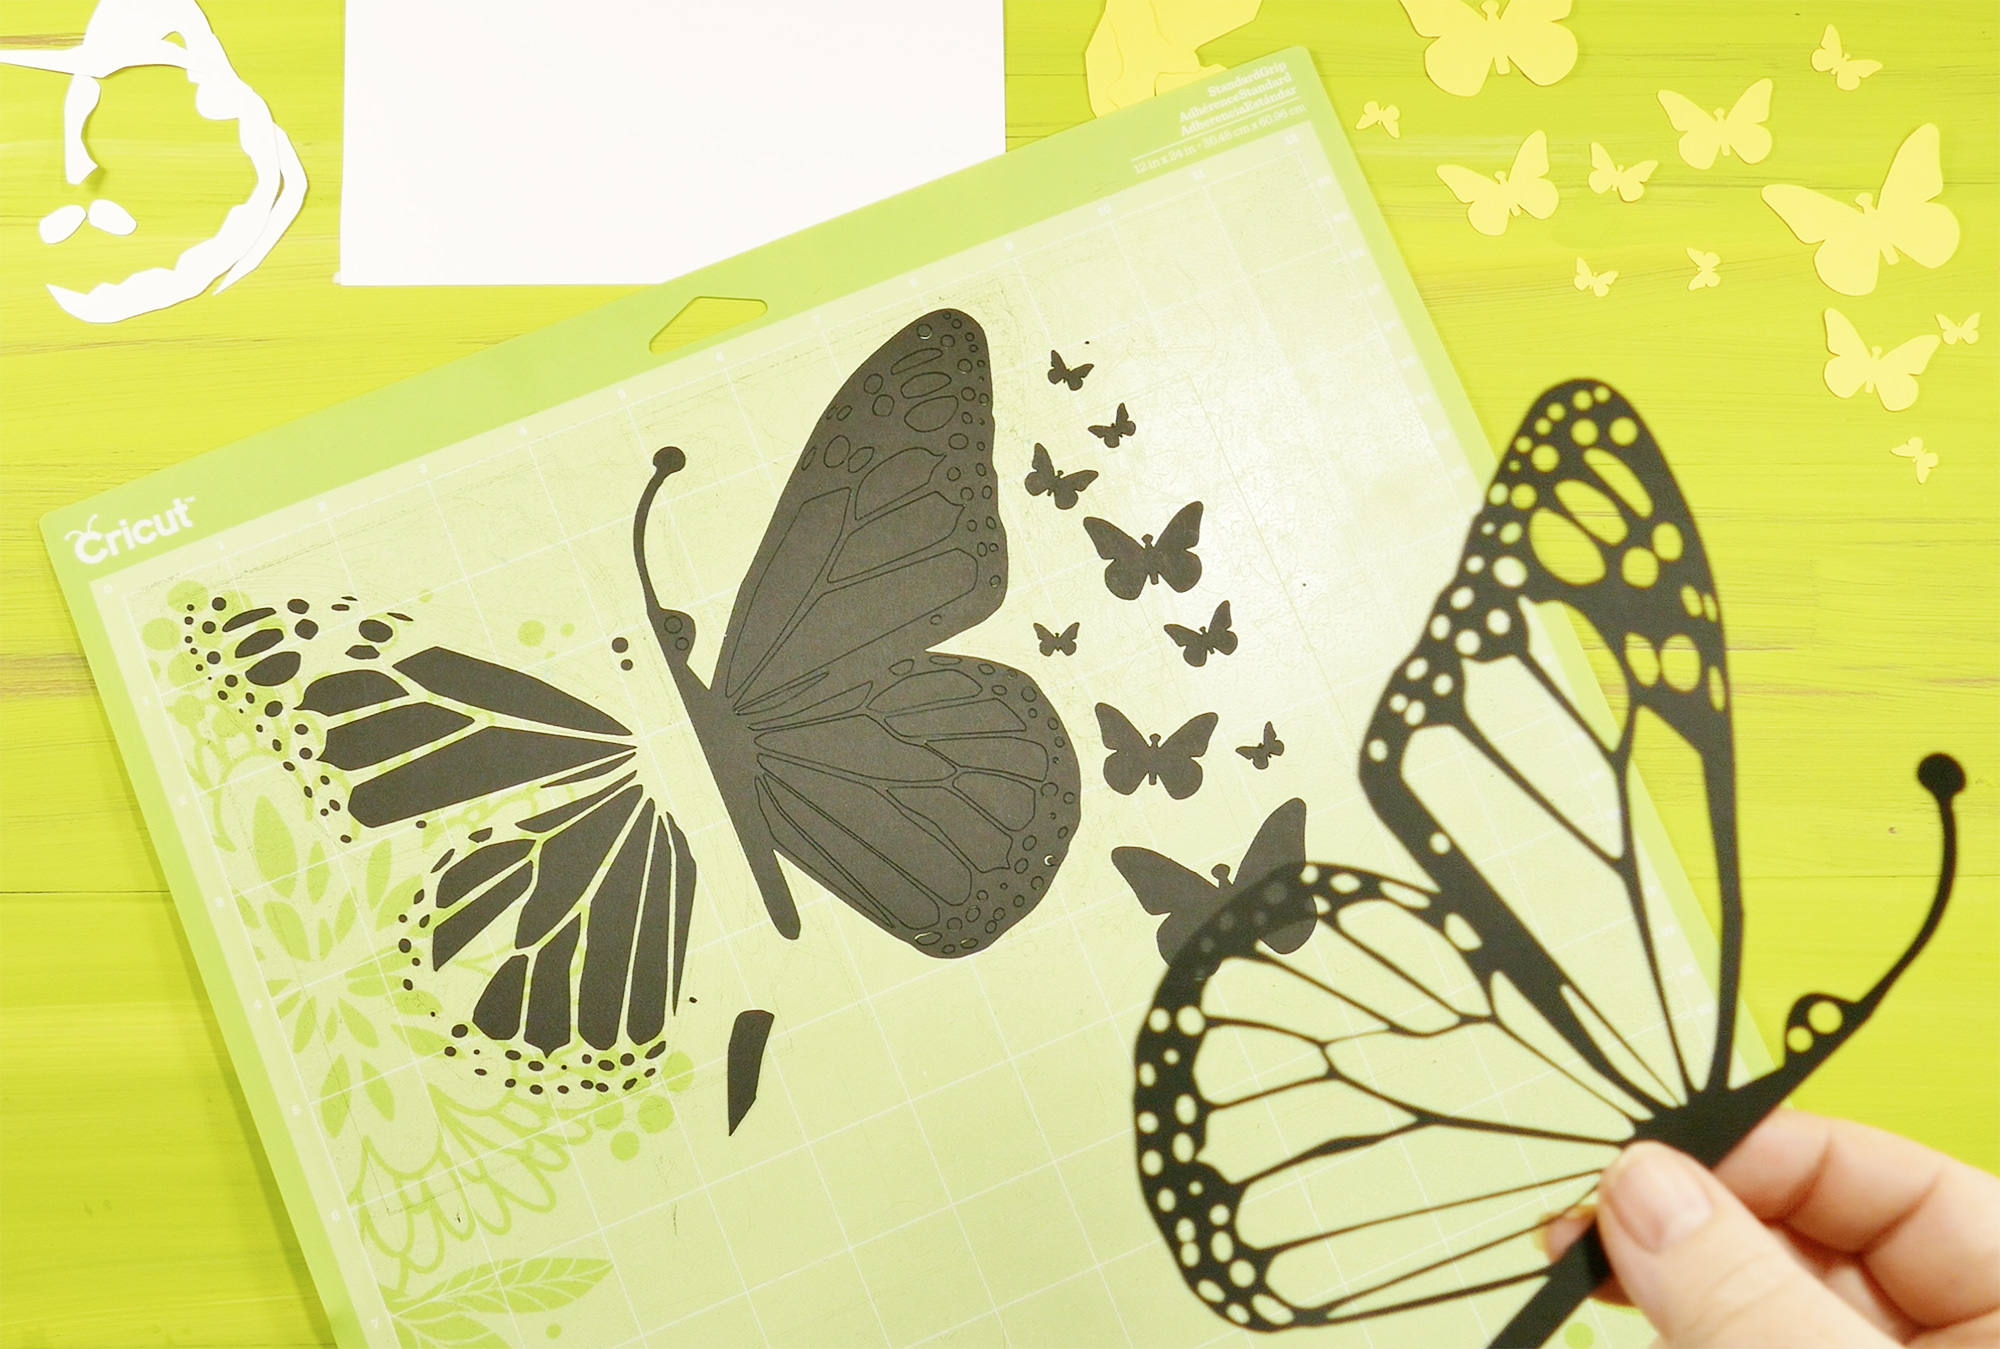 Free Free 143 Butterfly-Card-Jennifer Maker-Svg SVG PNG EPS DXF File